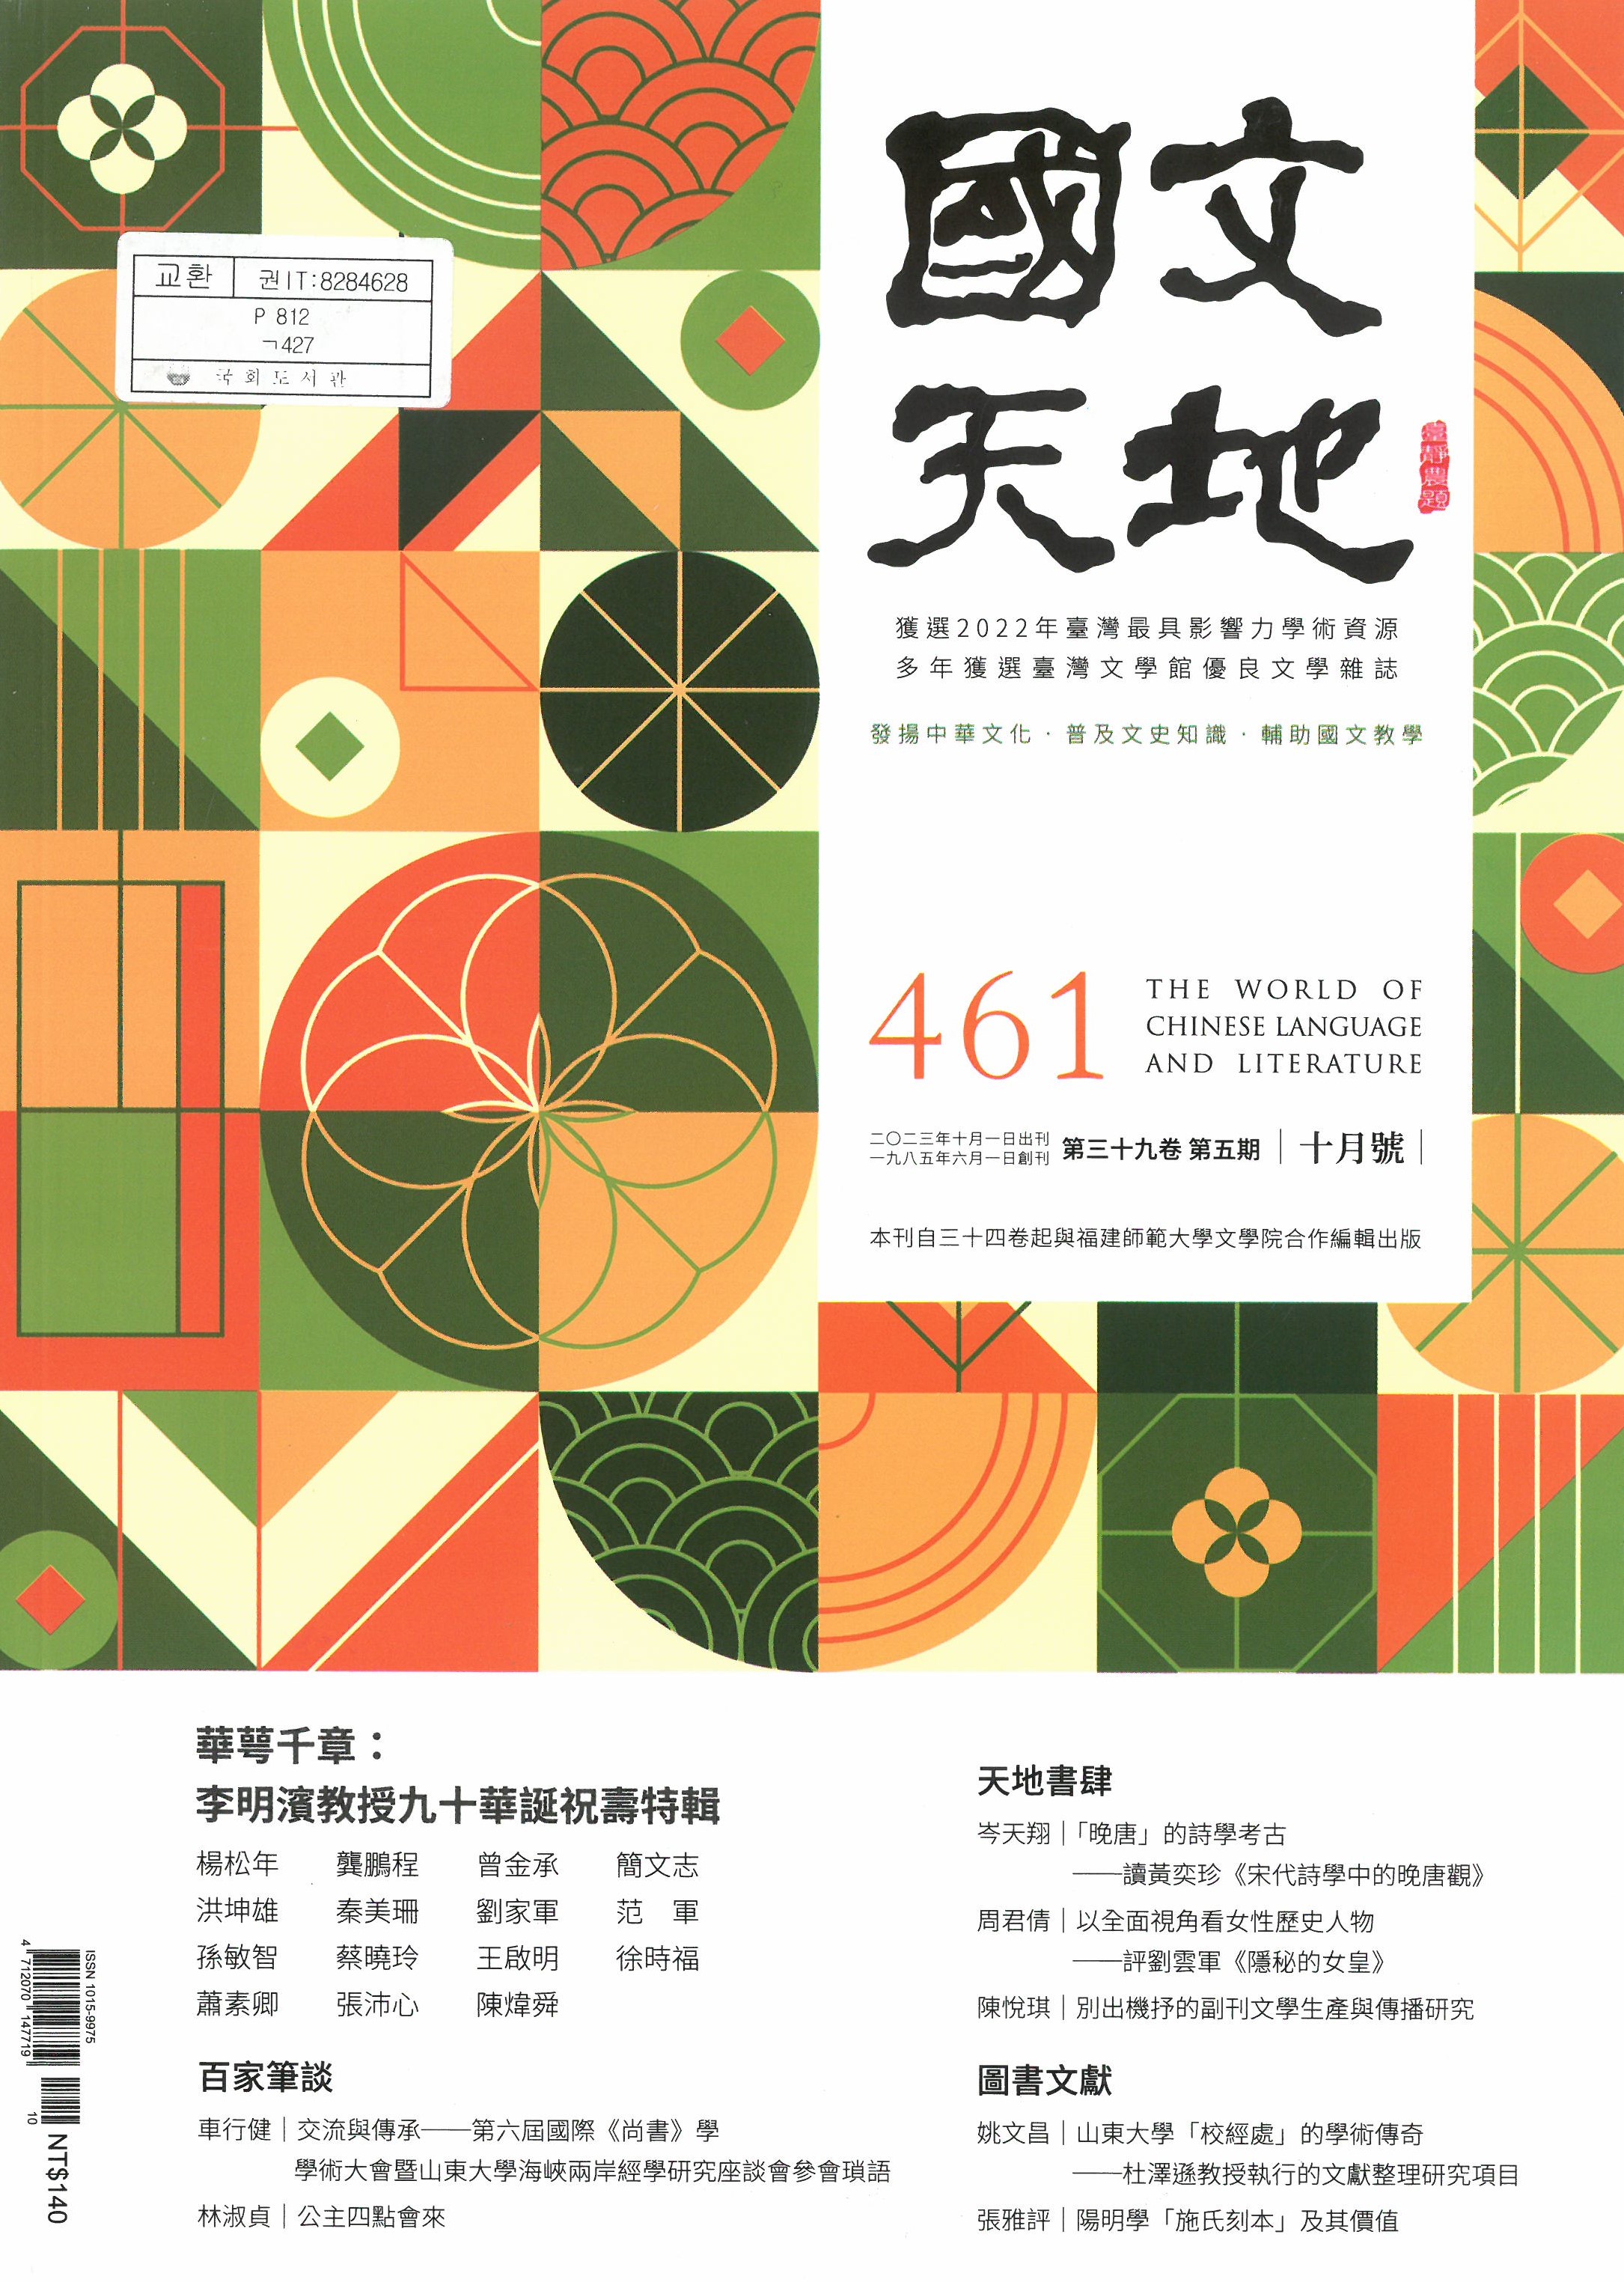 國文天地 = (The) World of Chinese language and literature